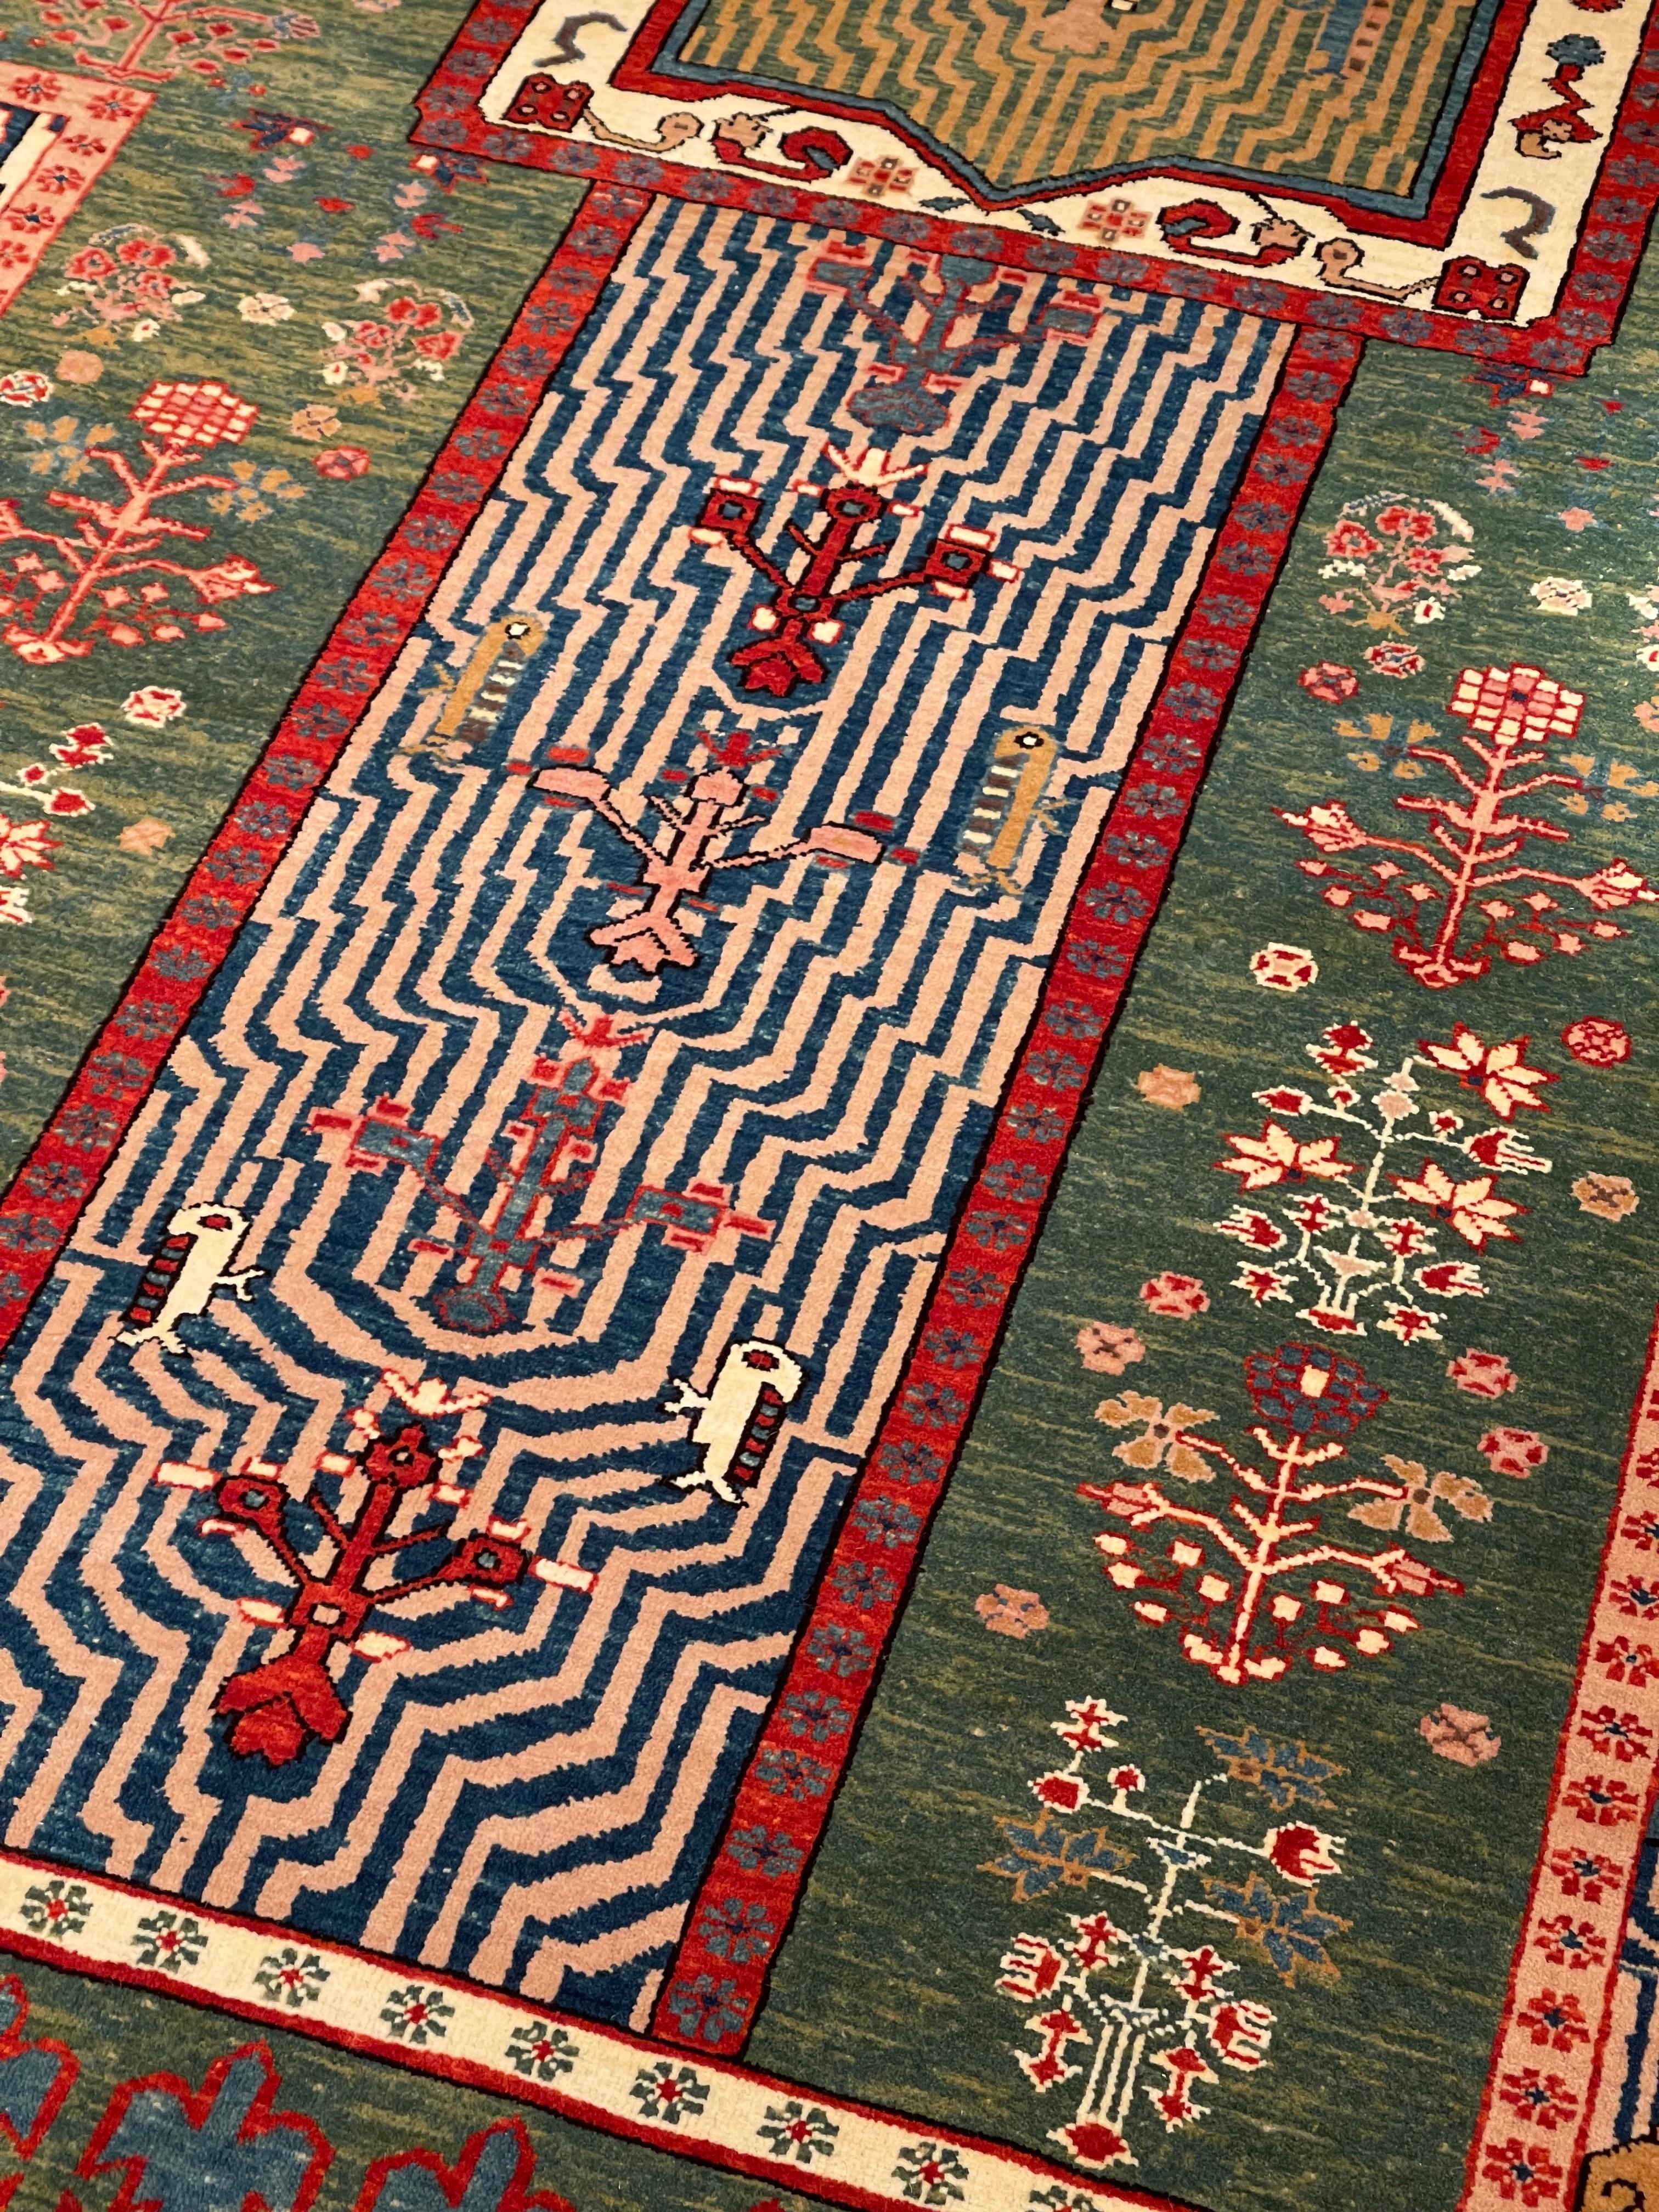 Die Quelle des Teppichs stammt aus dem Buch Islamic Carpets, Joseph V. McMullan, Near Eastern Art Research Center Inc. 1965, New York, Nr. 28. Dieser Teppich mit persischem Gartenmuster stammt aus der zweiten Hälfte des 18. Jahrhunderts aus dem